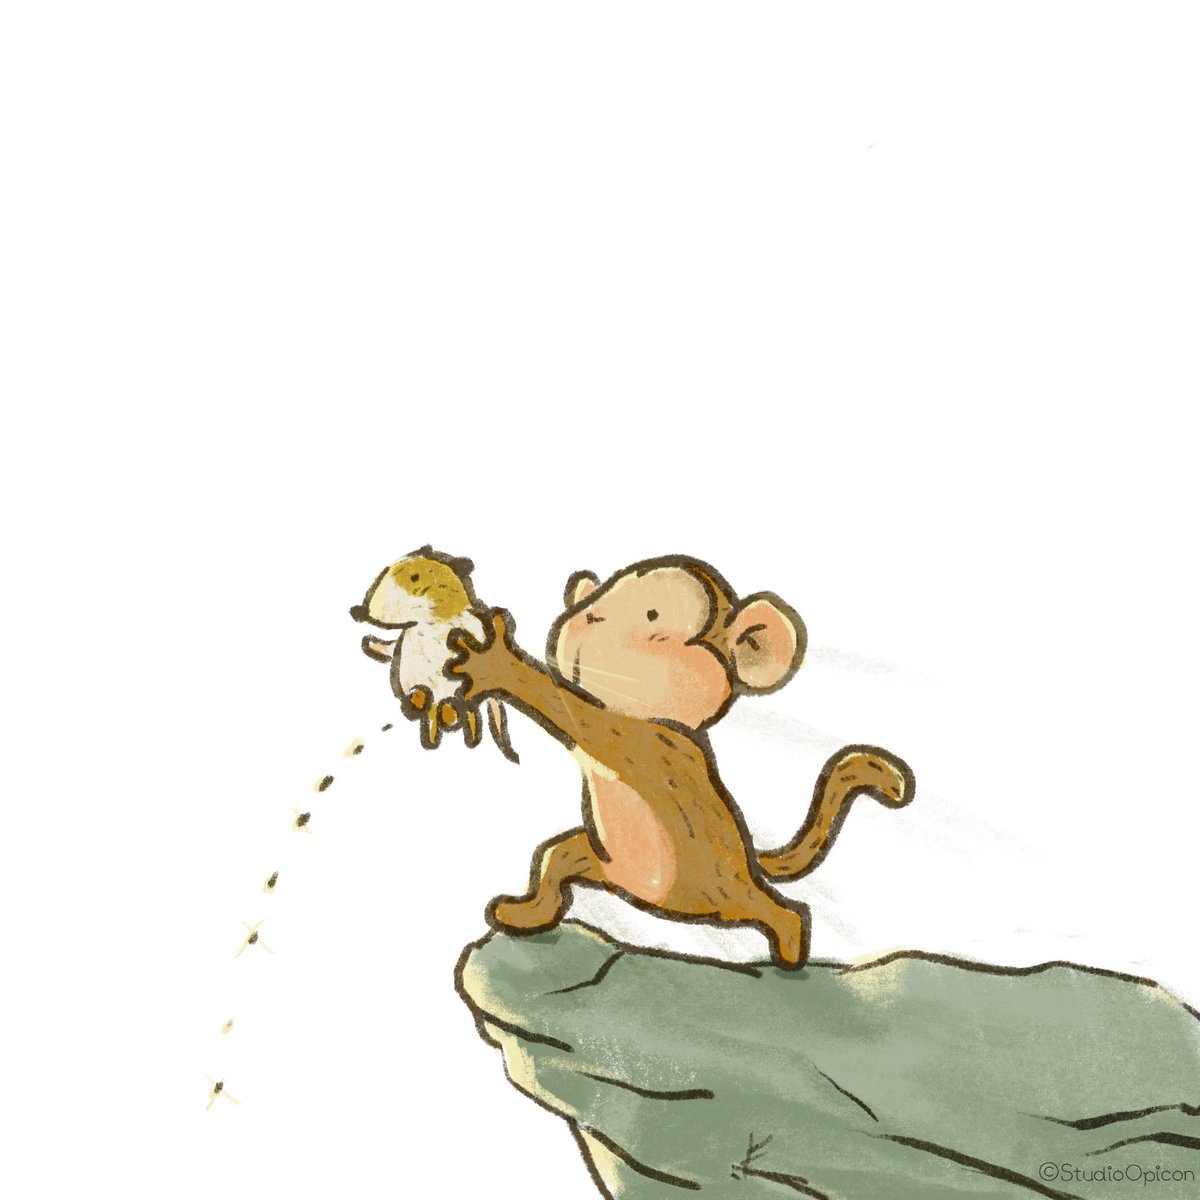 Studioopicon プライドちっち イラスト キャラクター サル ハムスター ライオンキング プライドロック ちっち 動物イラスト 和み系キャラ ゆるいイラスト Illustration Character Monkey Hamster Lionking Priderock